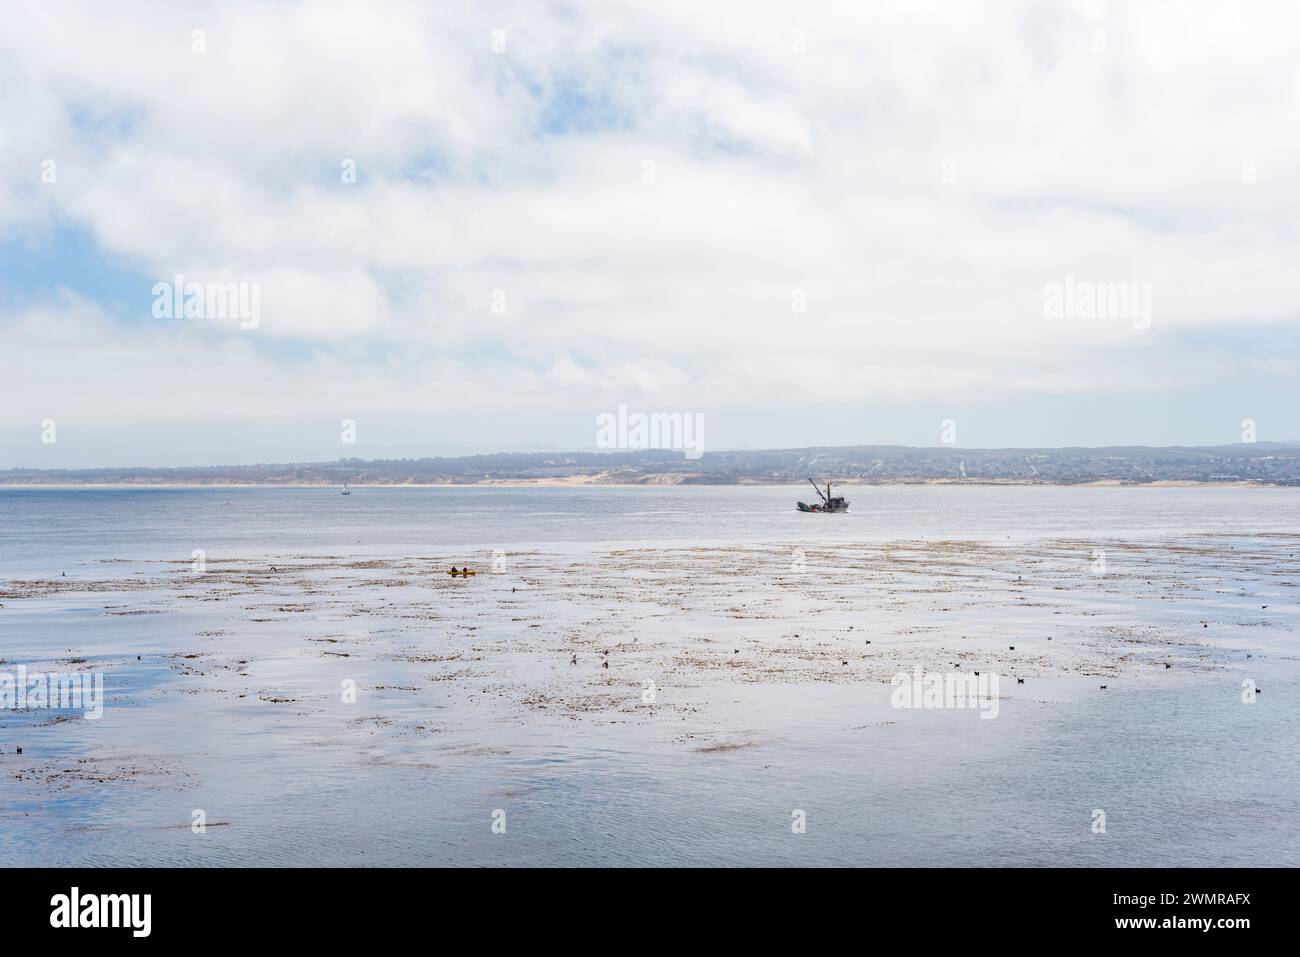 Un bateau de pêche traverse la baie de Monterey par une journée nuageuse avec la côte californienne au loin. Les lits de varech couvrent la surface de l'océan à proximité. Banque D'Images